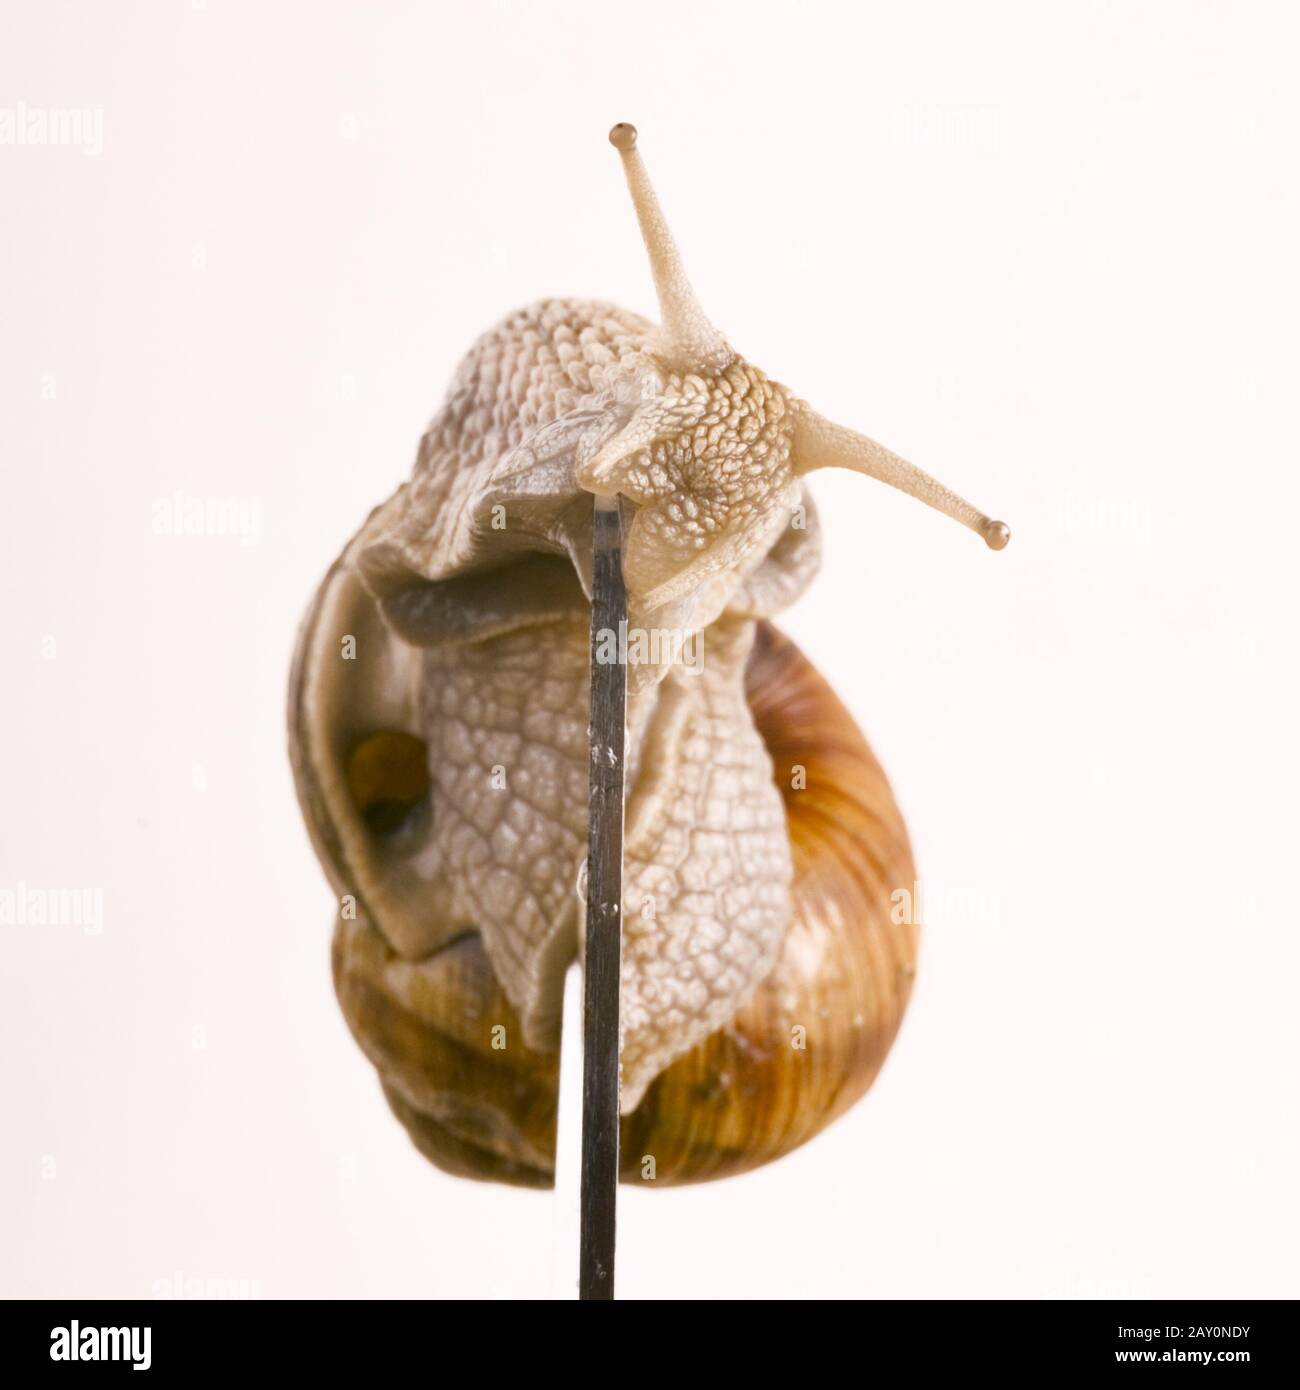 Schnecke auf einer Schere - Helix pomatia Linnaeus mit Schere Stockfoto